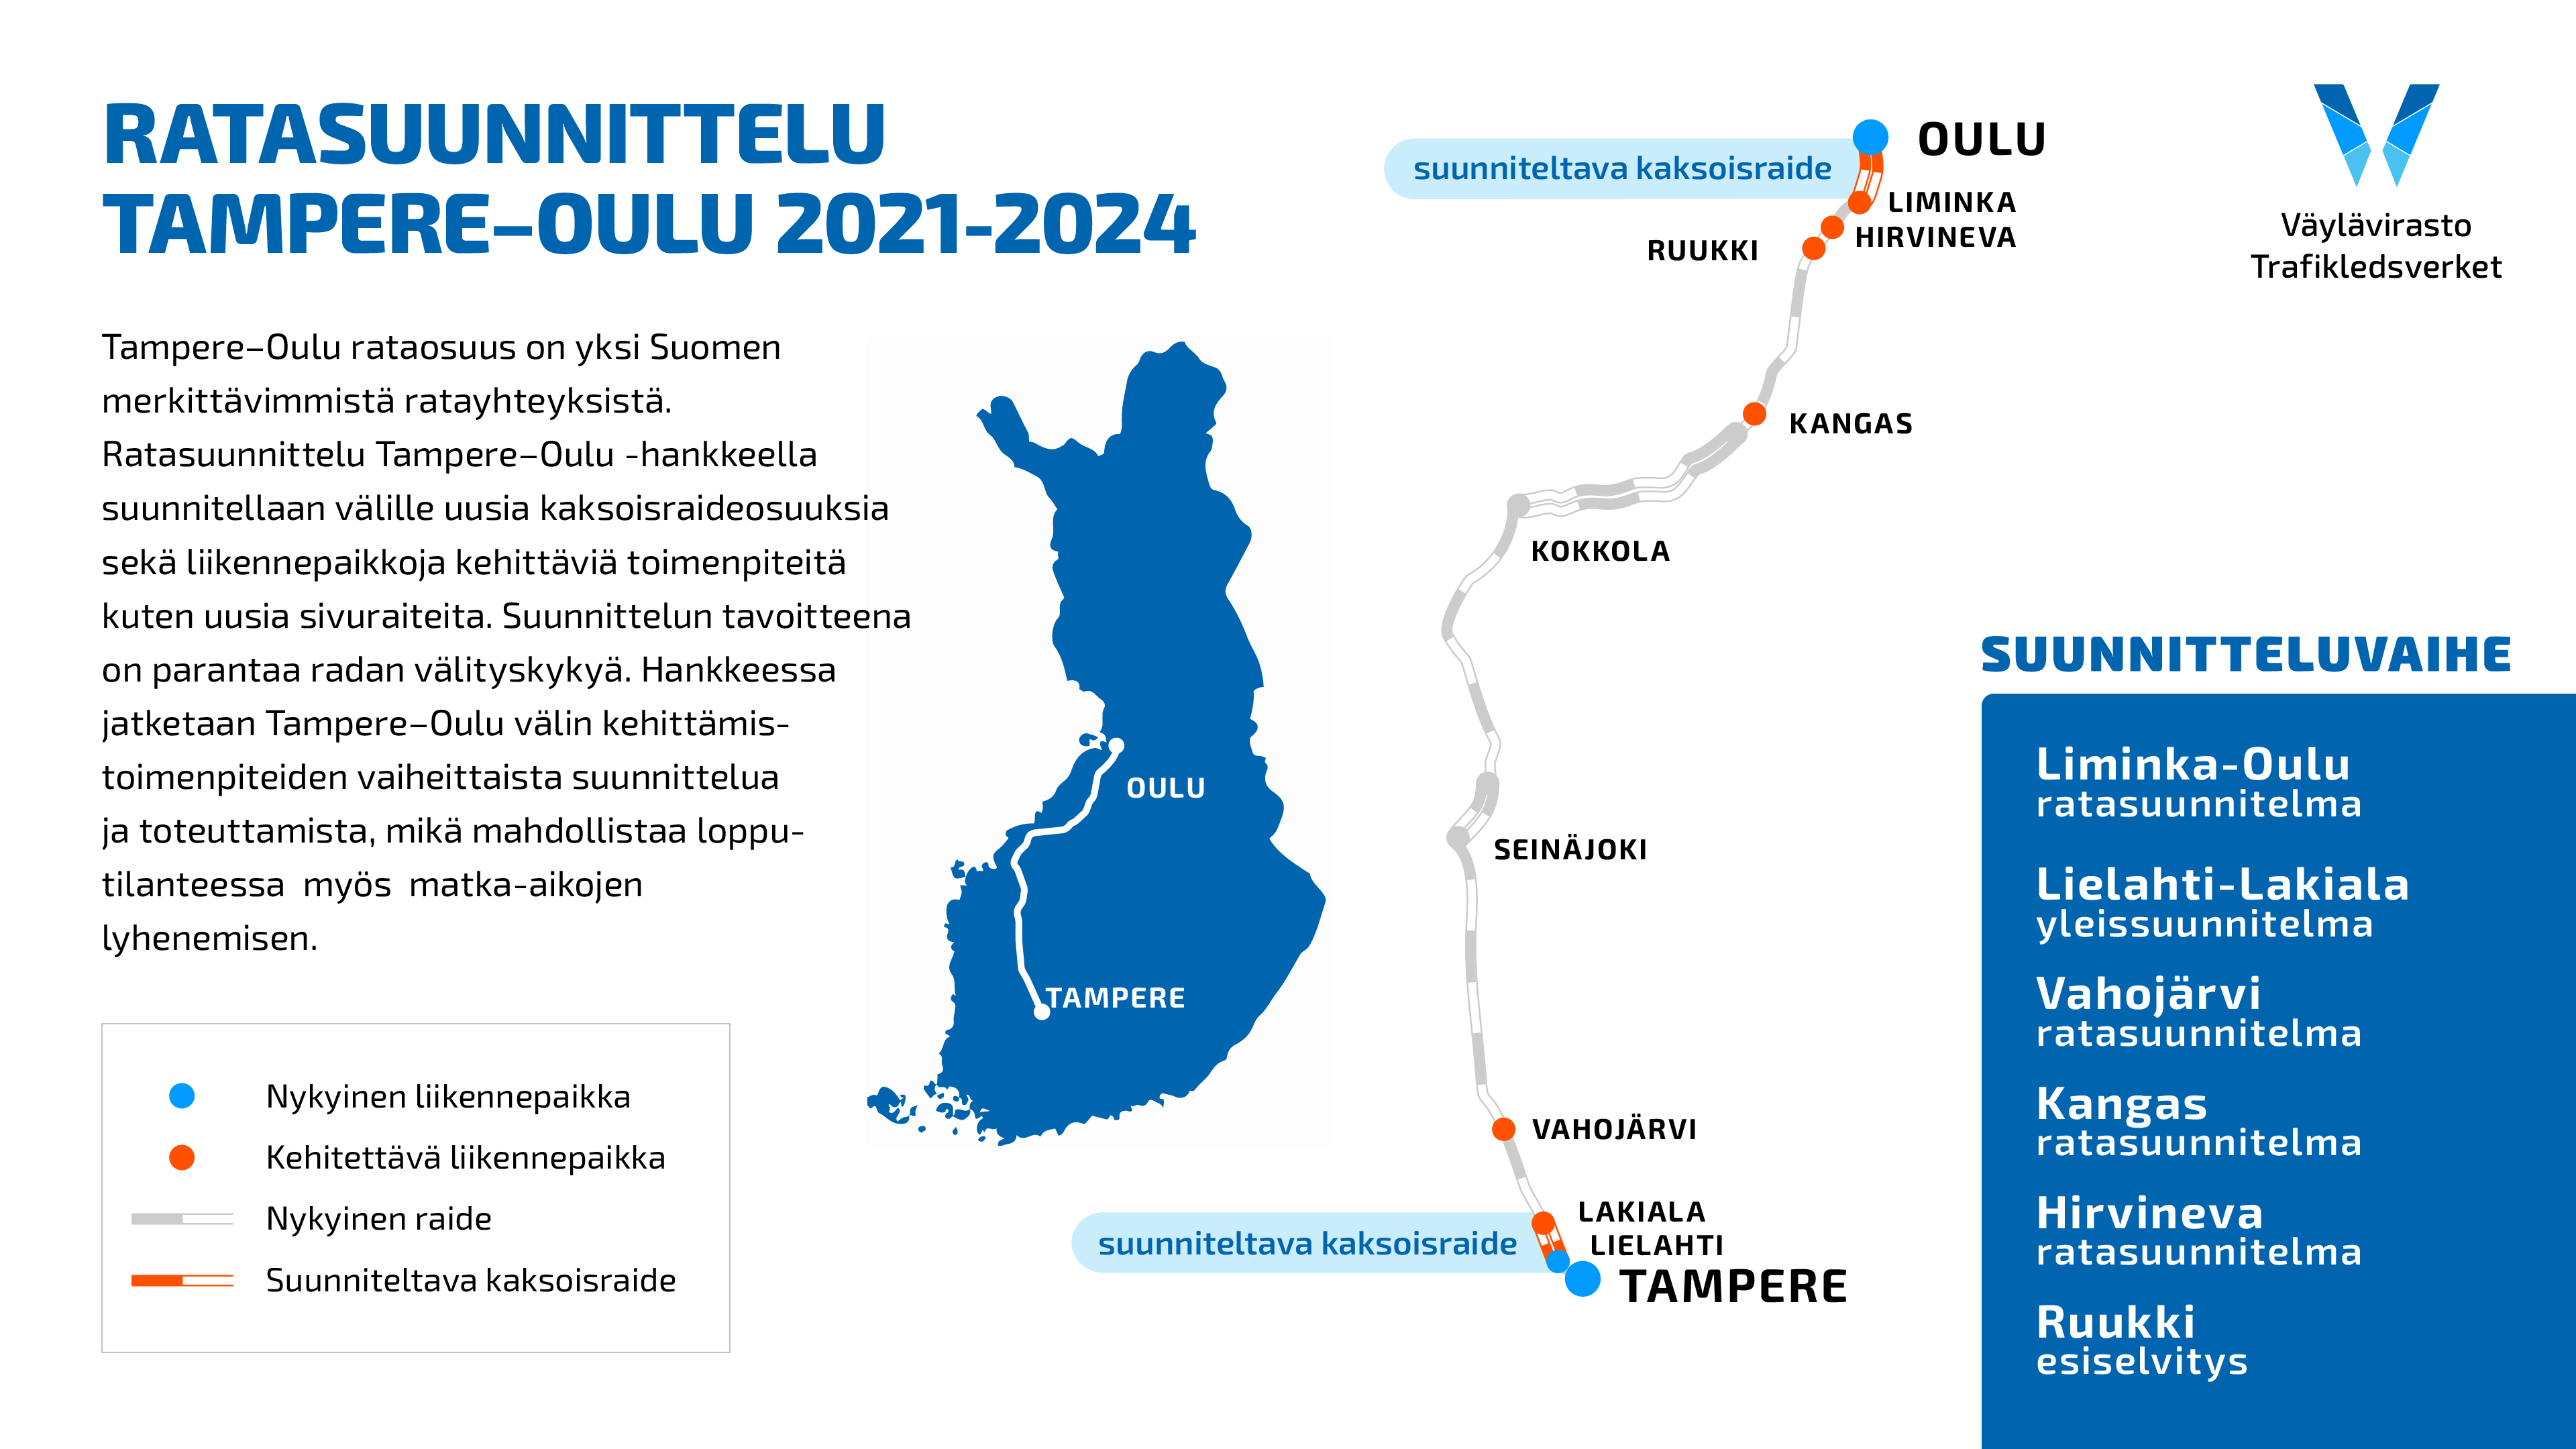 Kuvassa esitetään hankkeen suunnittelukohteet (Lielahti-Lakiala, Vahojärvi, Kangas ja Hirvineva, Ruukki sekä Liminka-Oulu) kartalla.